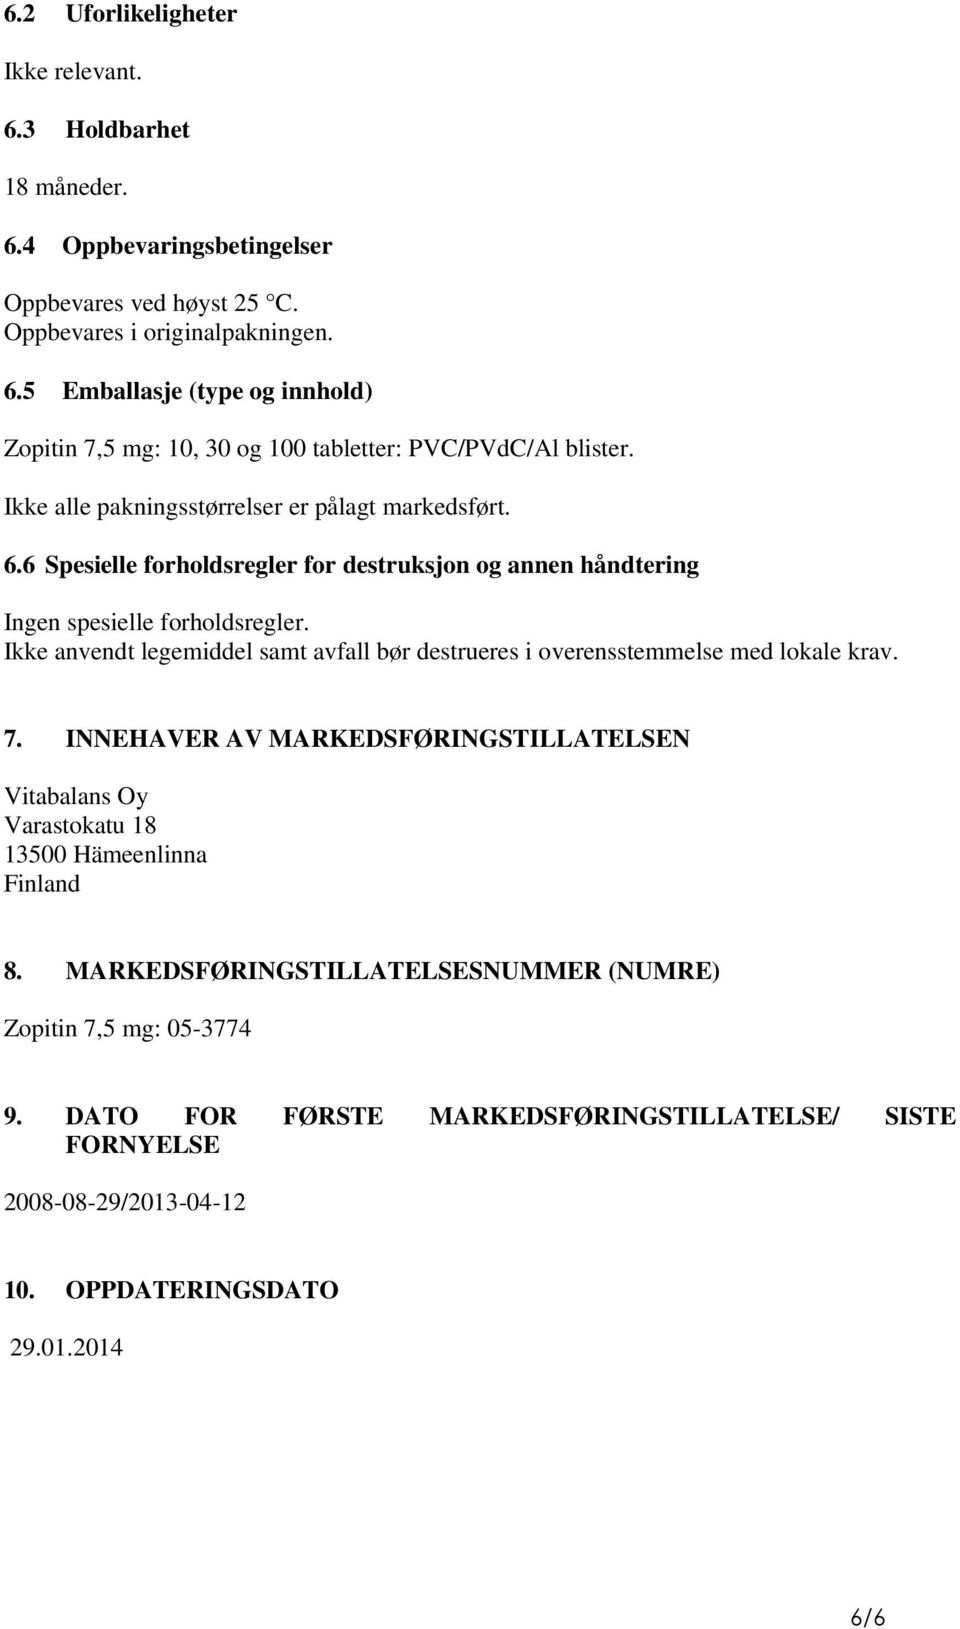 Ikke anvendt legemiddel samt avfall bør destrueres i overensstemmelse med lokale krav. 7. INNEHAVER AV MARKEDSFØRINGSTILLATELSEN Vitabalans Oy Varastokatu 18 13500 Hämeenlinna Finland 8.